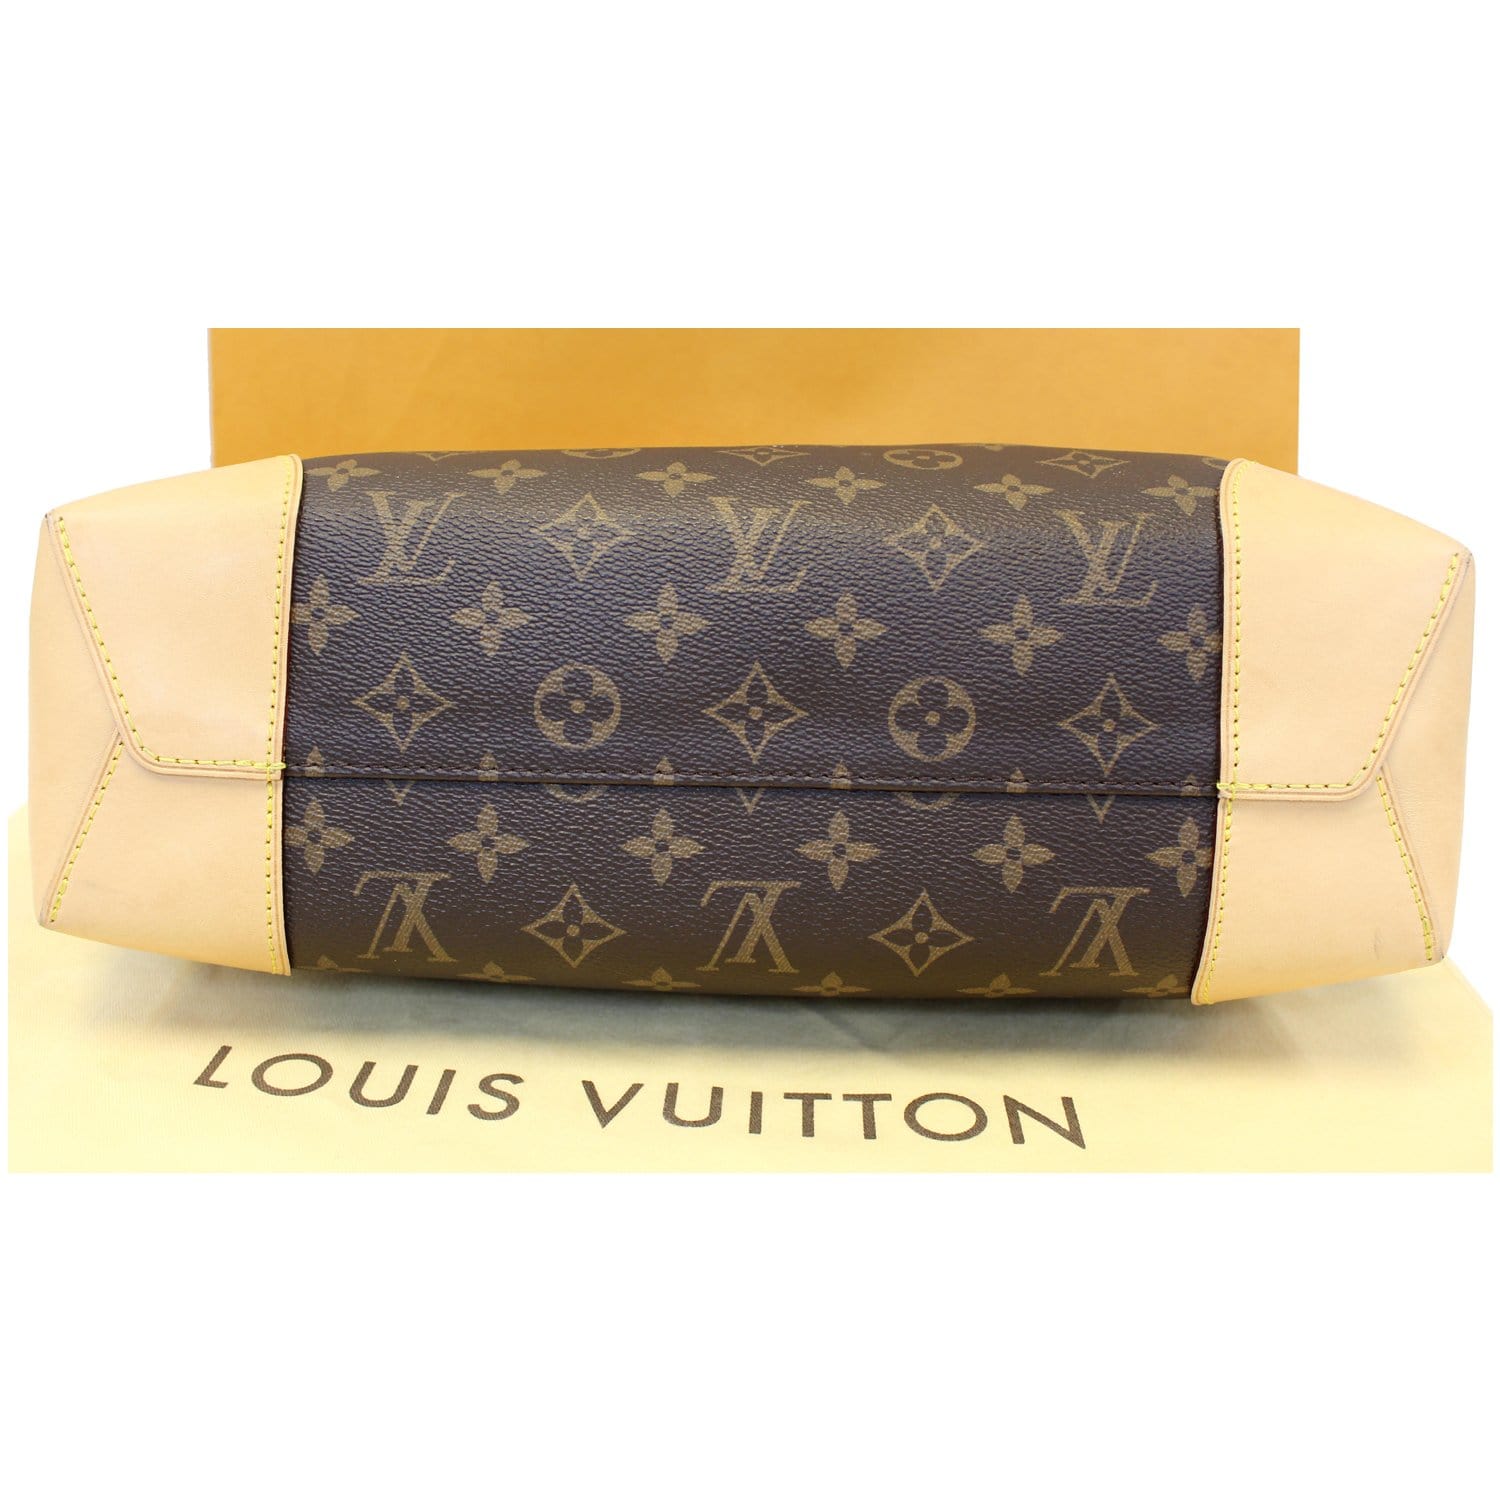 Louis Vuitton, Bags, Sold Authentic Louis Vuitton Berri Pm